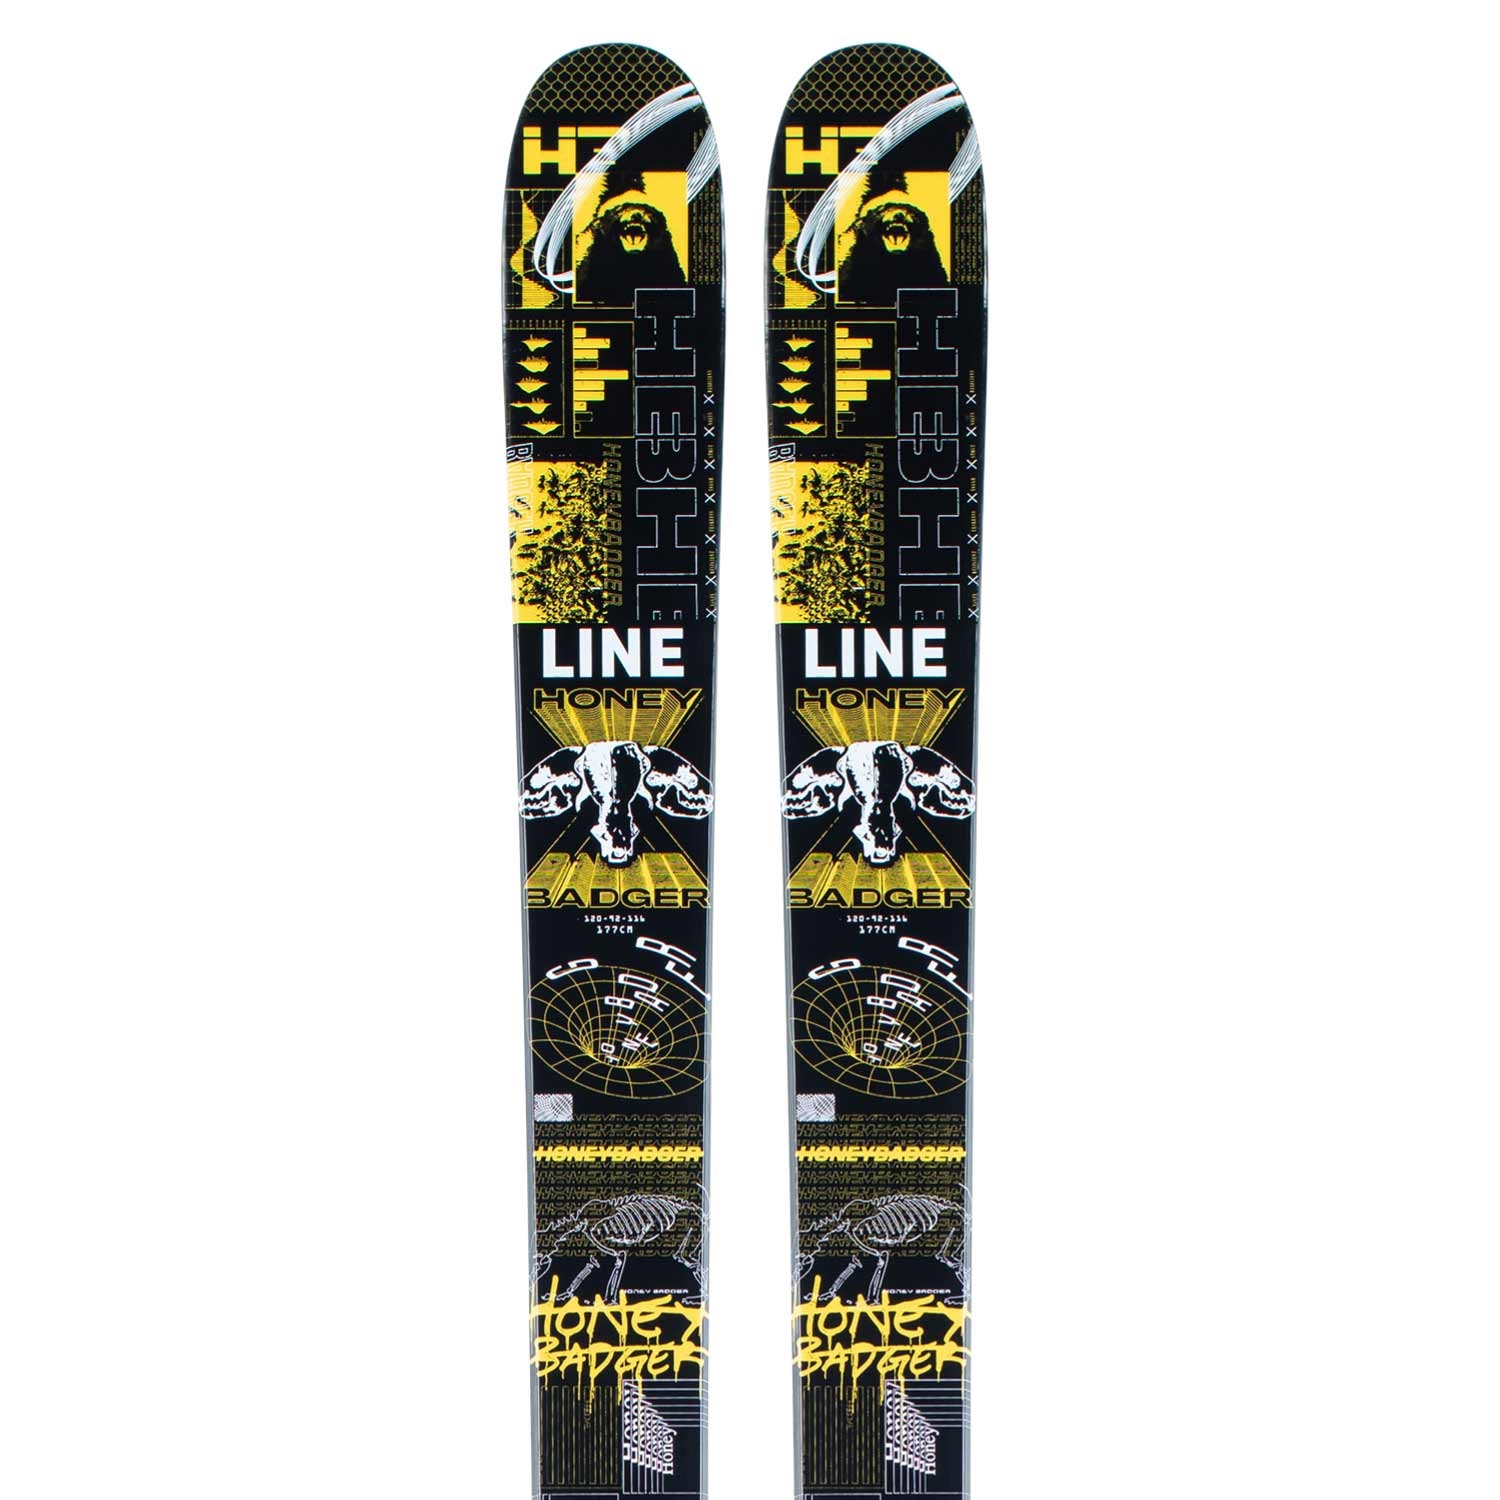 Line Honey Badger Skis 2021